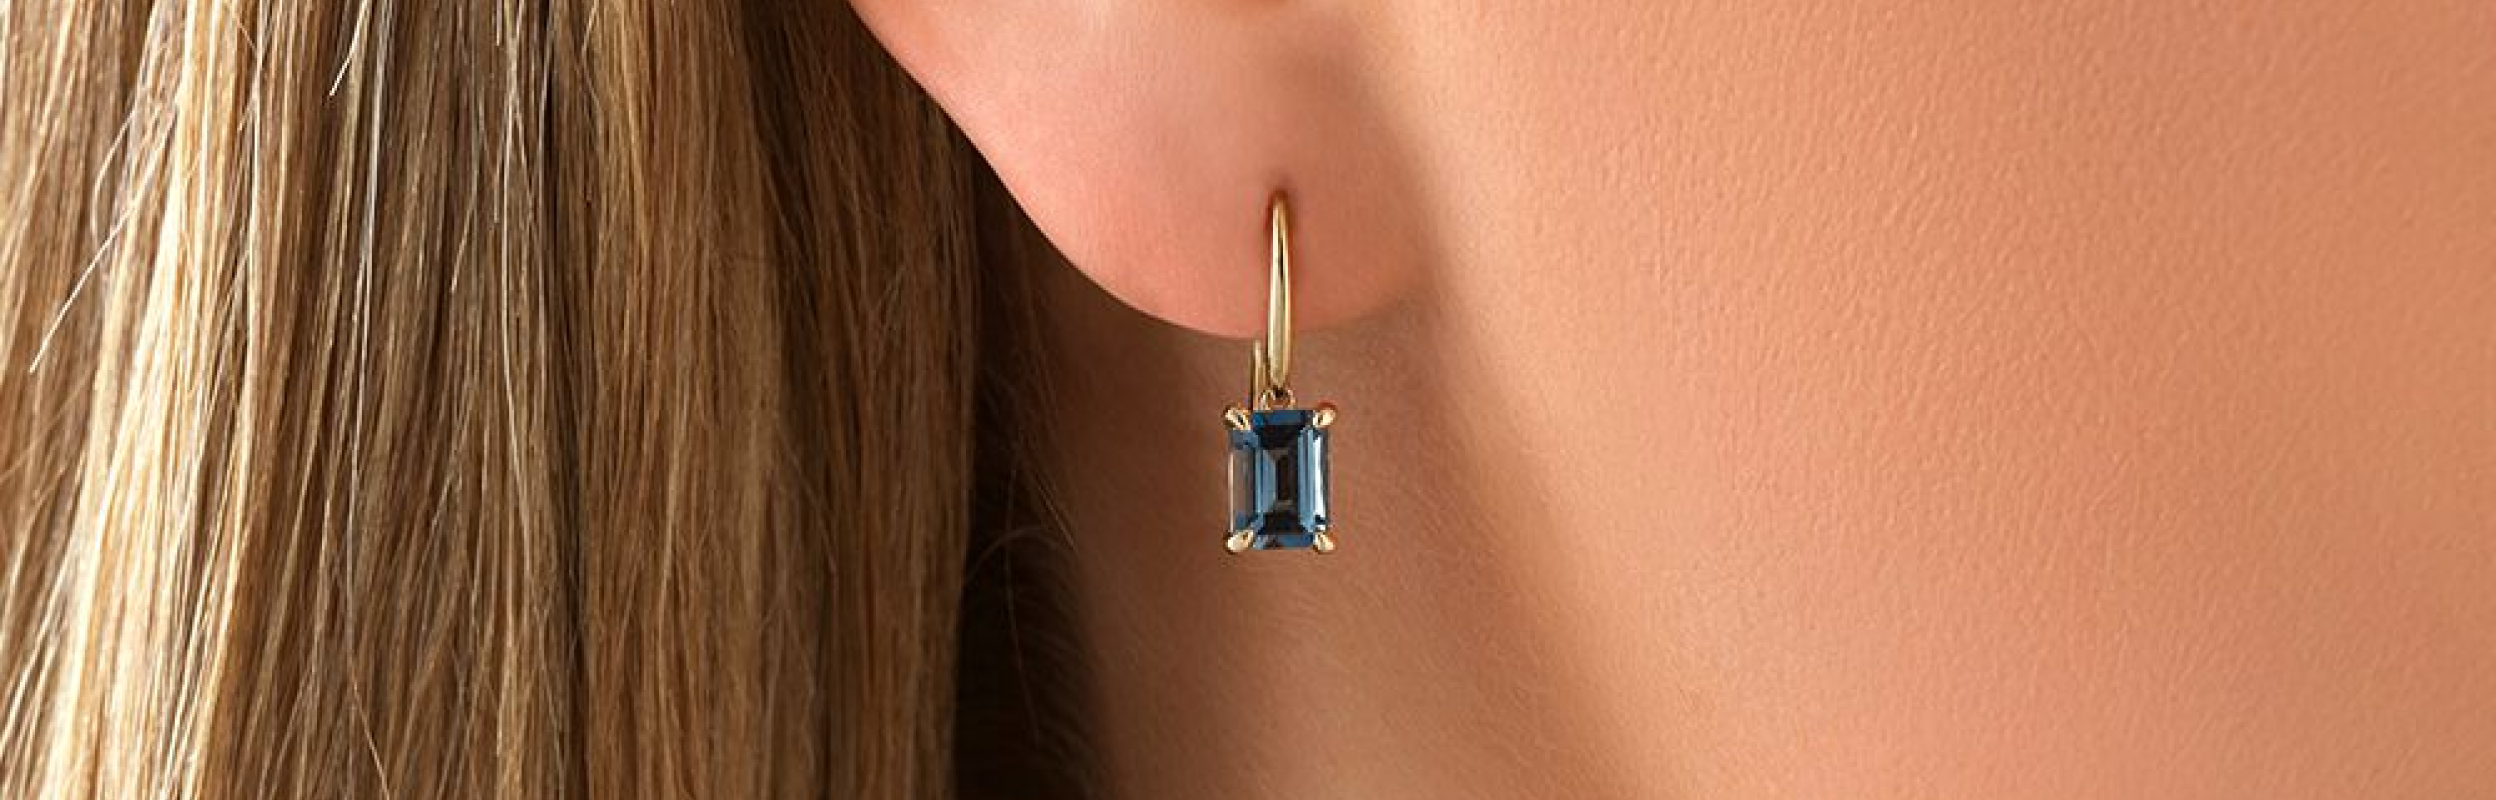 dangling blue stone earring in womans ear